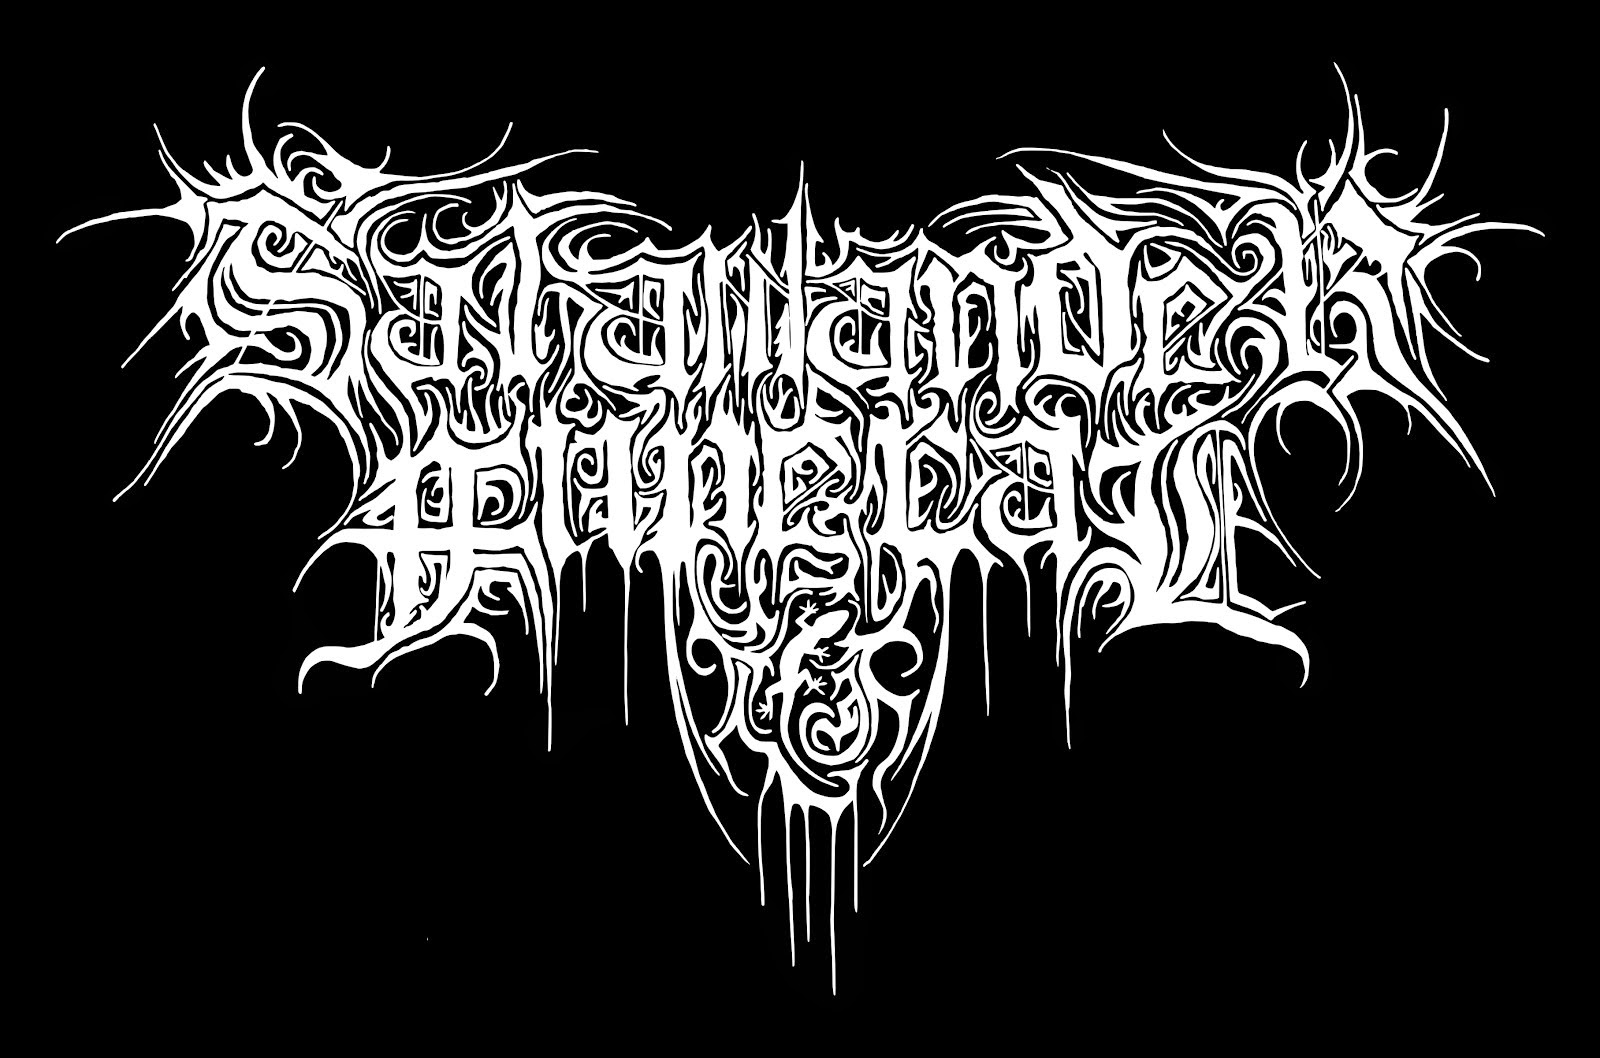 Salamander Funeral logo 2015